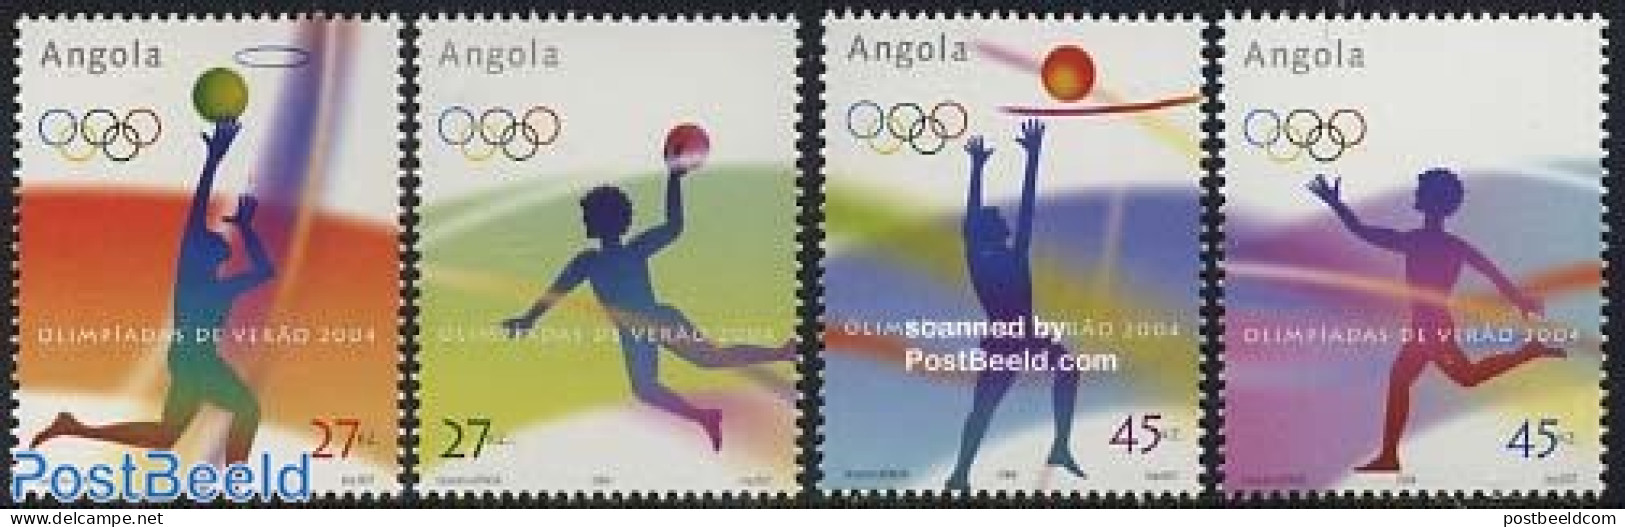 Angola 2004 Olympic Games 4v, Mint NH, Sport - Basketball - Handball - Olympic Games - Volleyball - Basket-ball